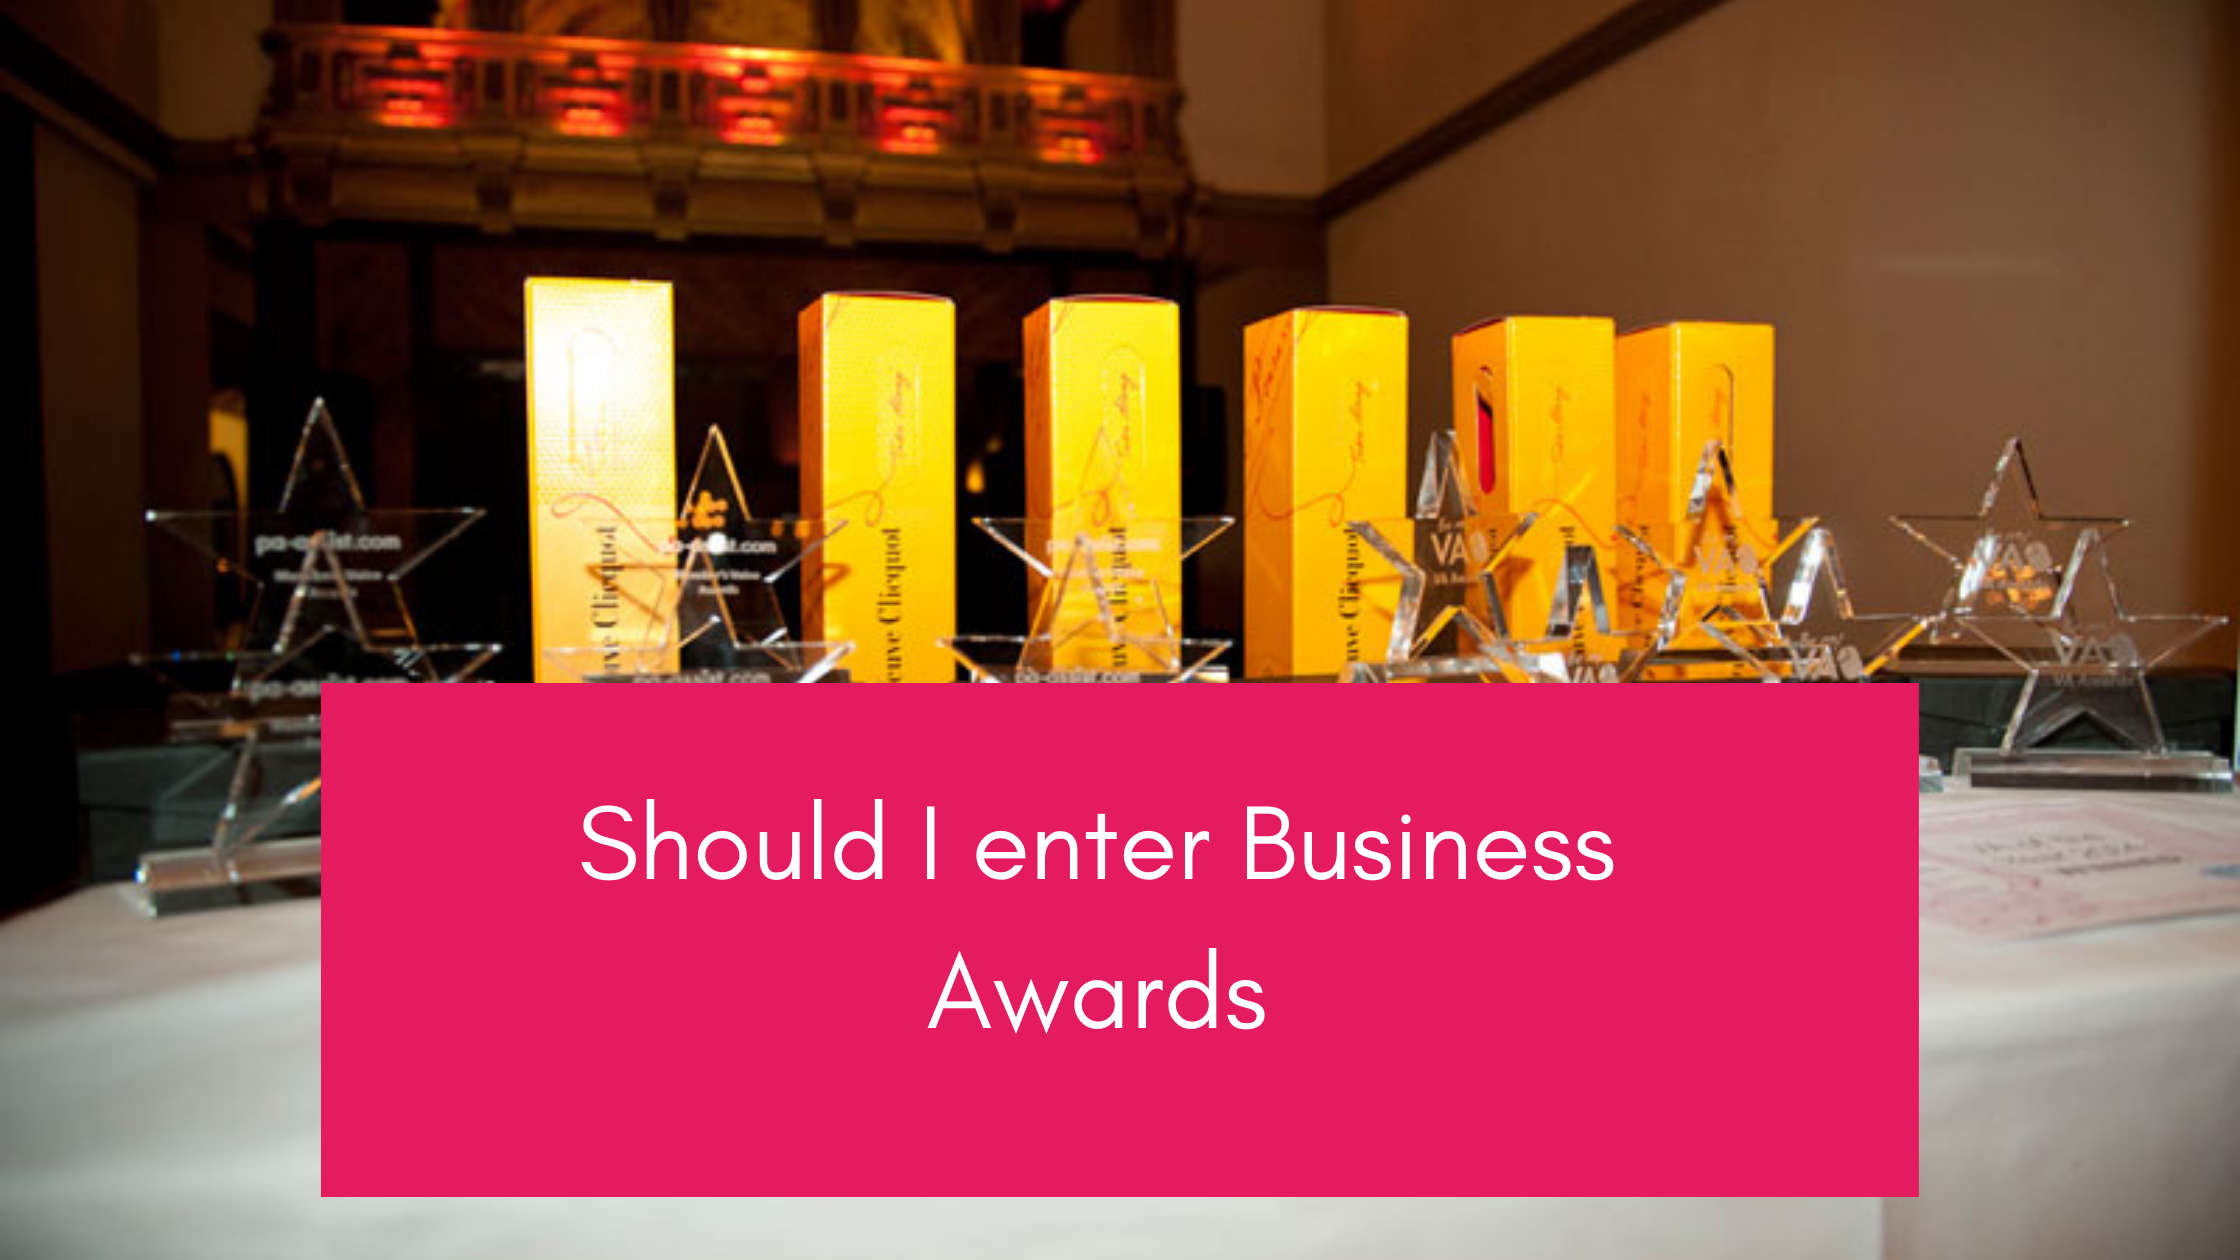 Should I enter business awards